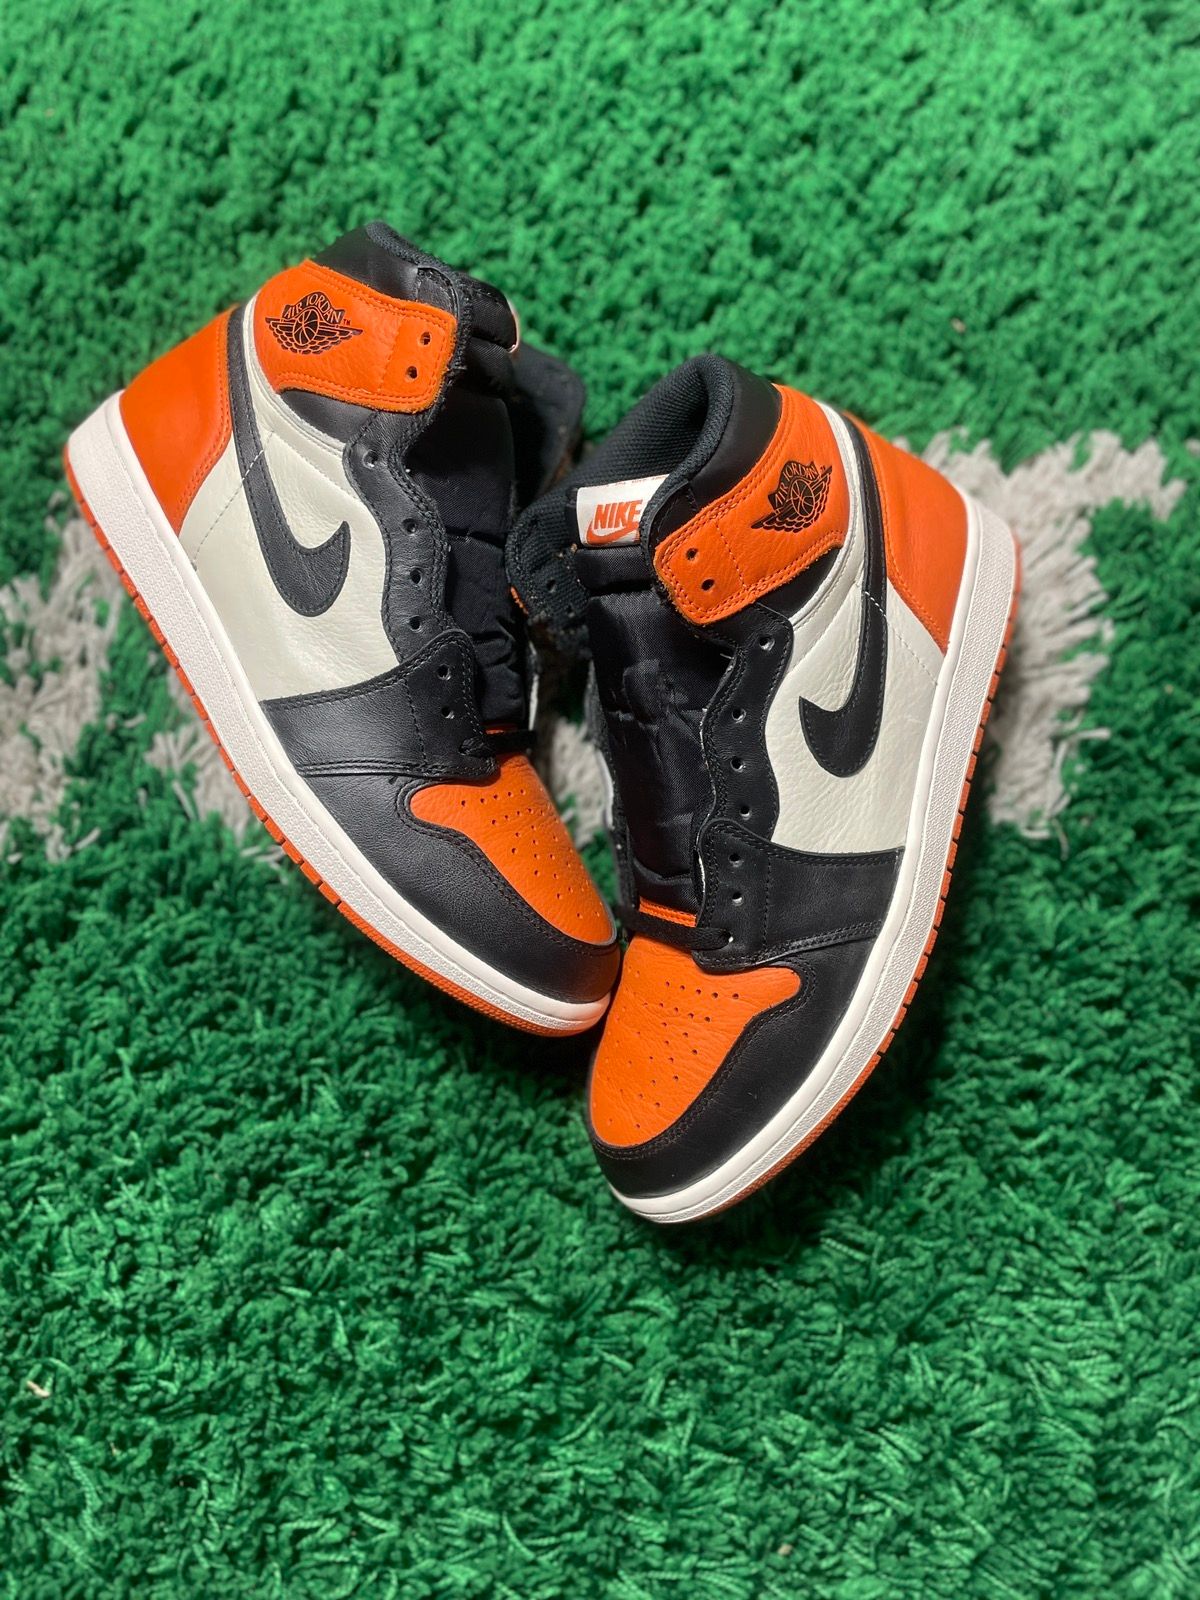 Pre-owned Jordan Nike Airjordan 1 High Retro Og Shattered Backboard 2015 Shoes In Orange